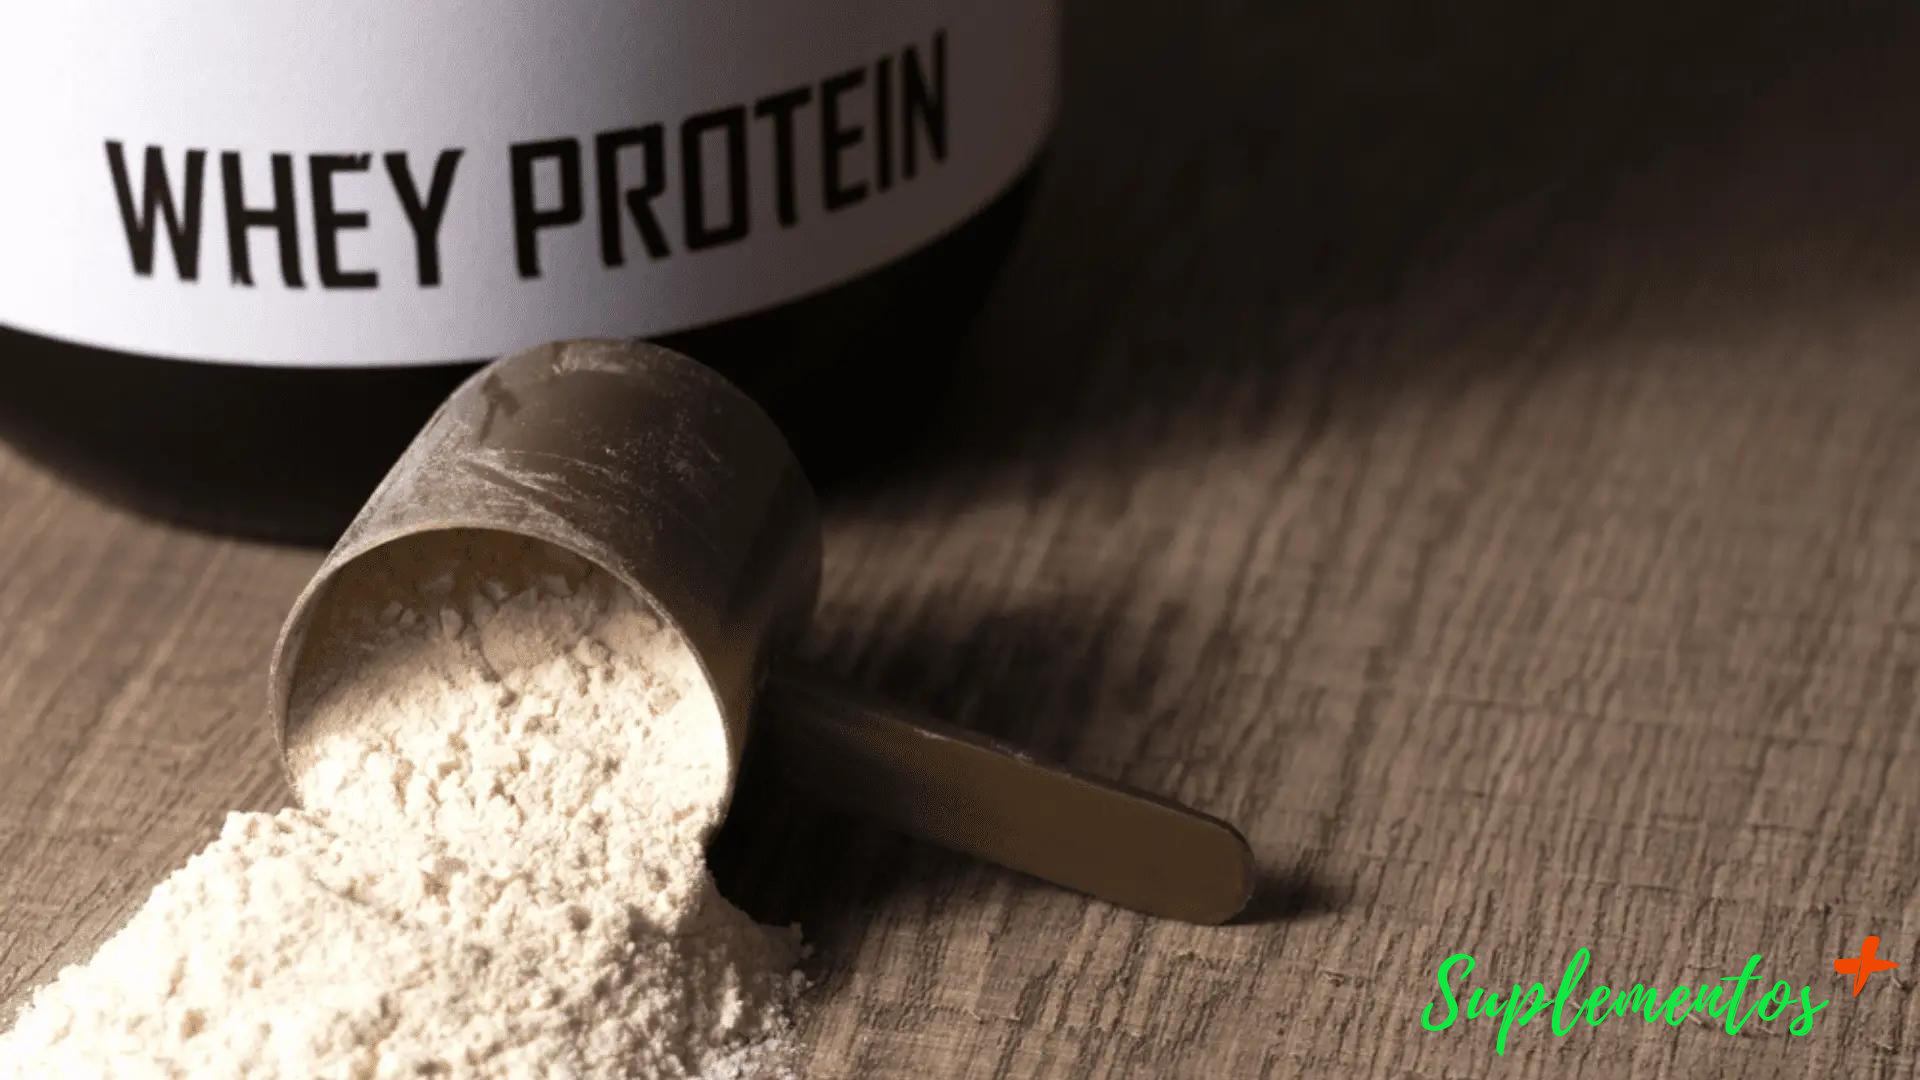 O que é whey protein?